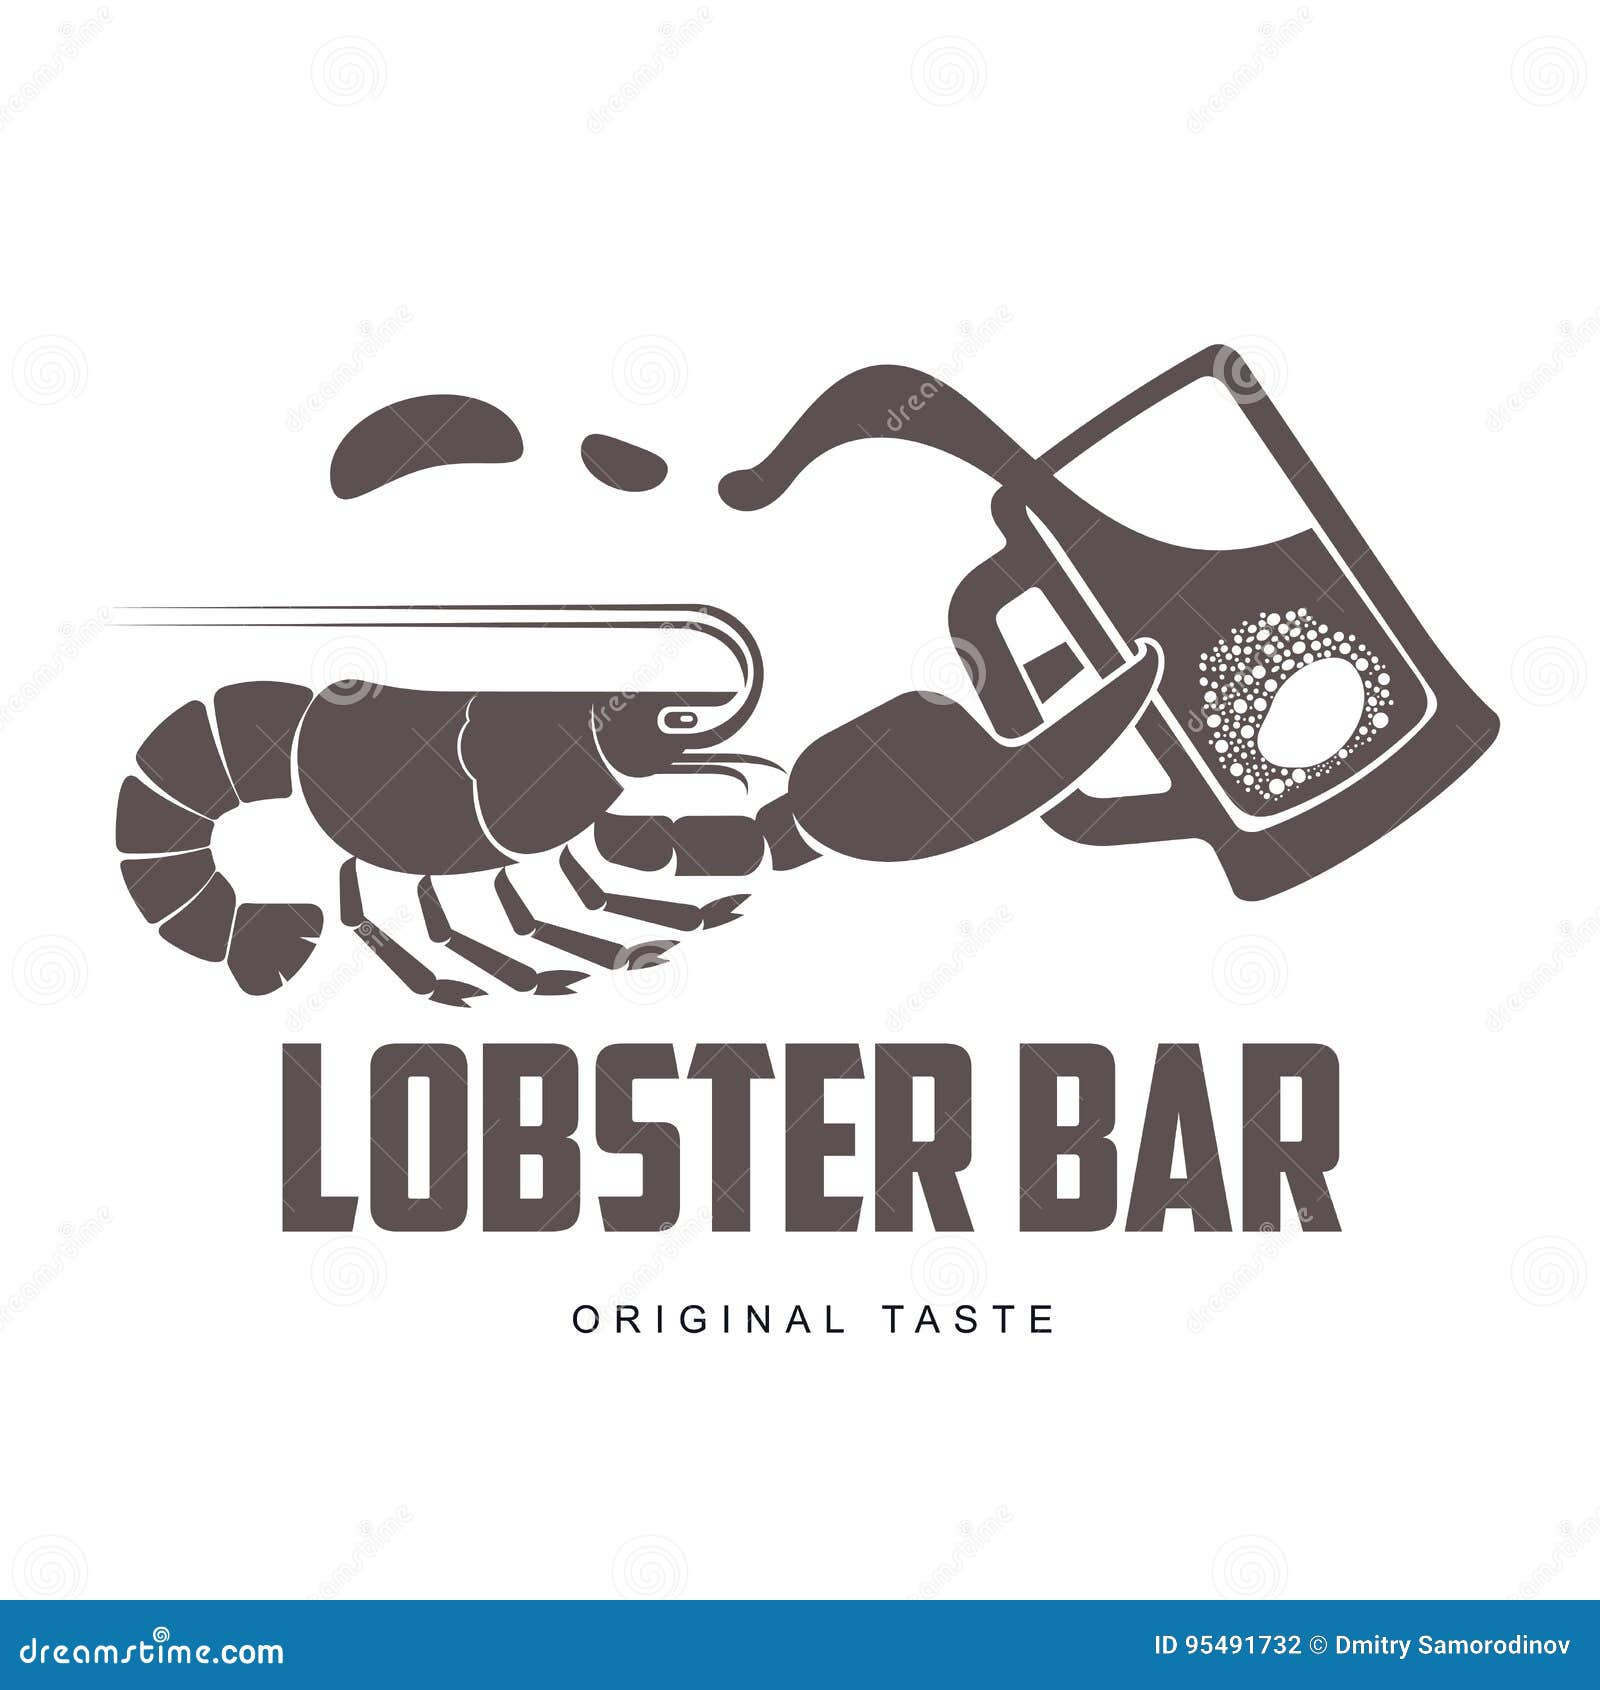 Lobster bar logo stock illustration. Illustration of food - 95491732